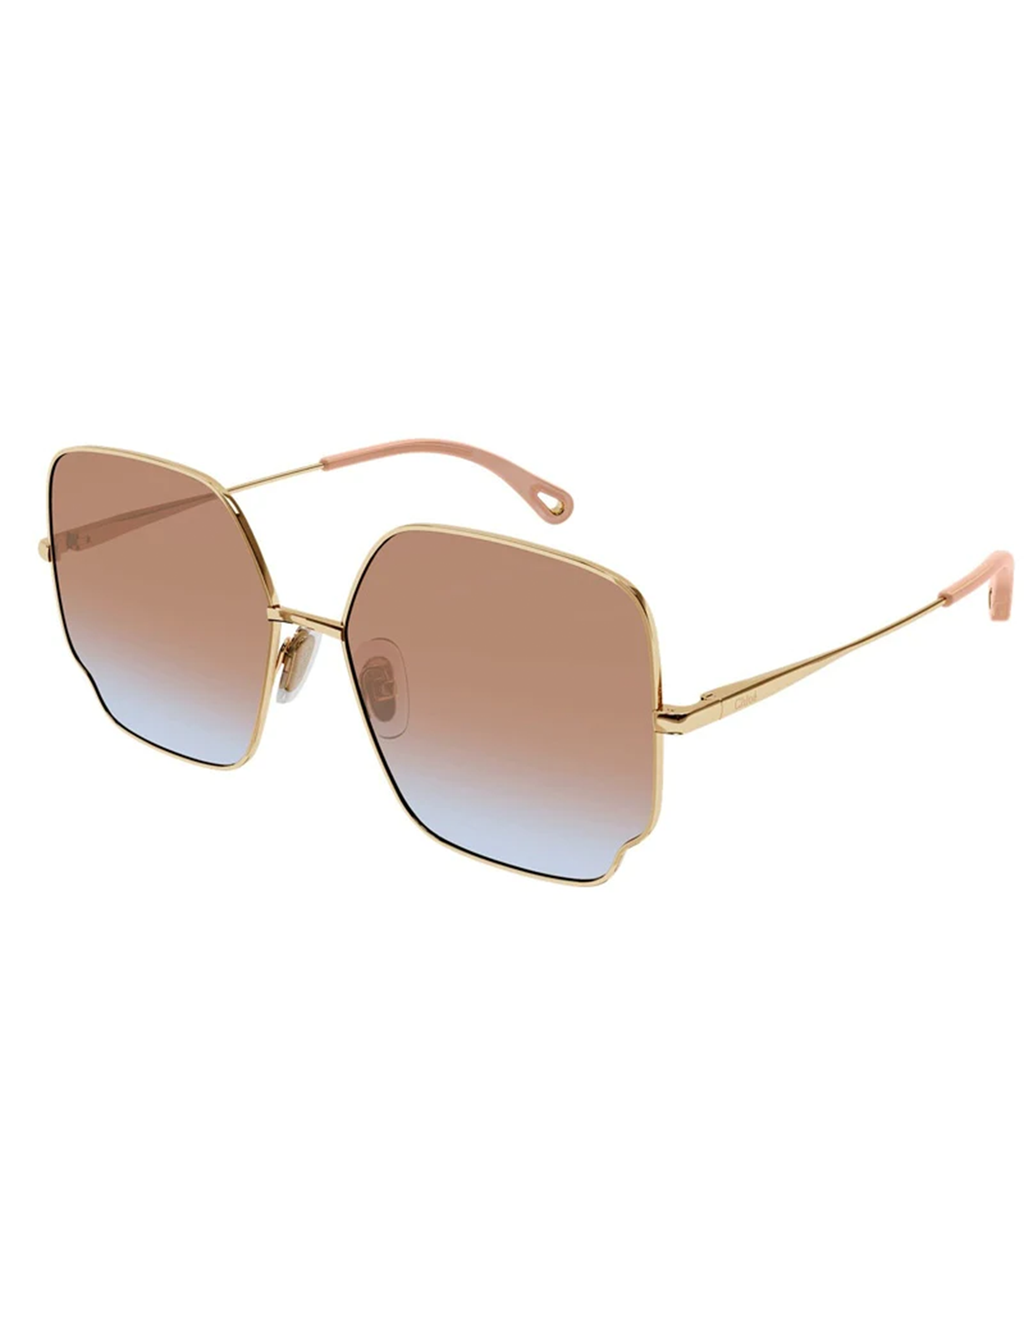 Square Scallop Sunglasses, Gold/Red